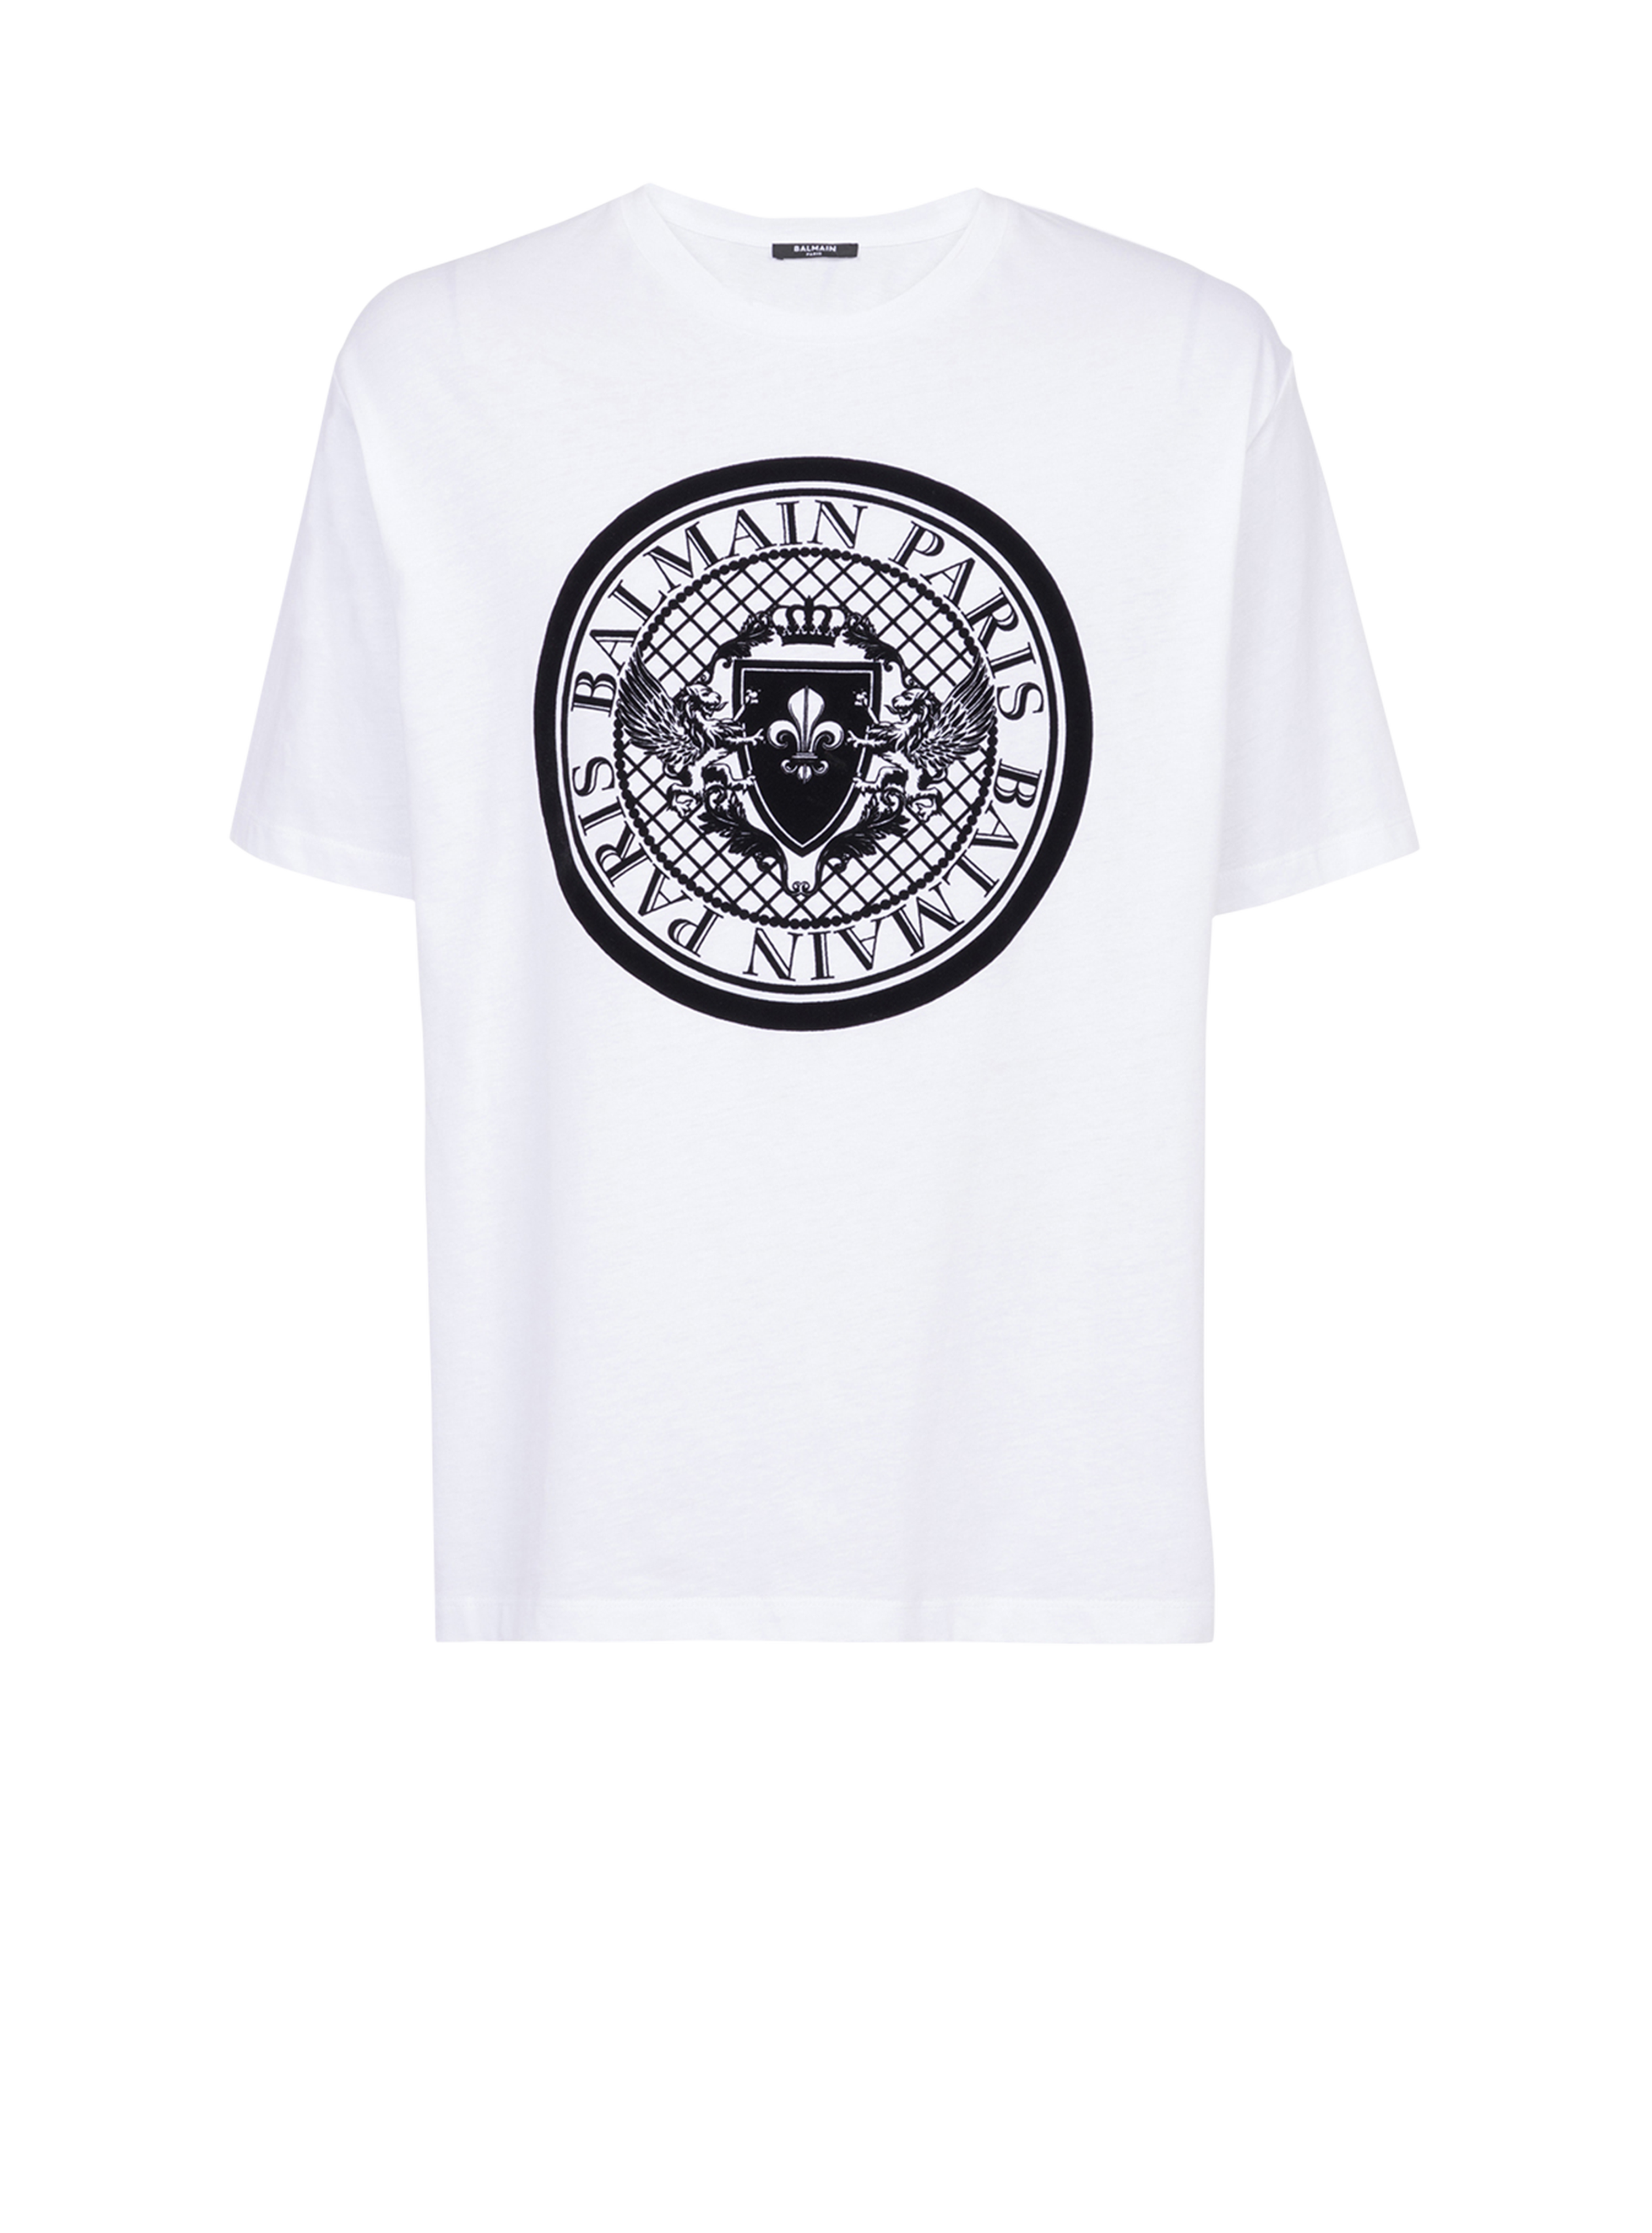 Cotton T-shirt with flocked Balmain medallion, white